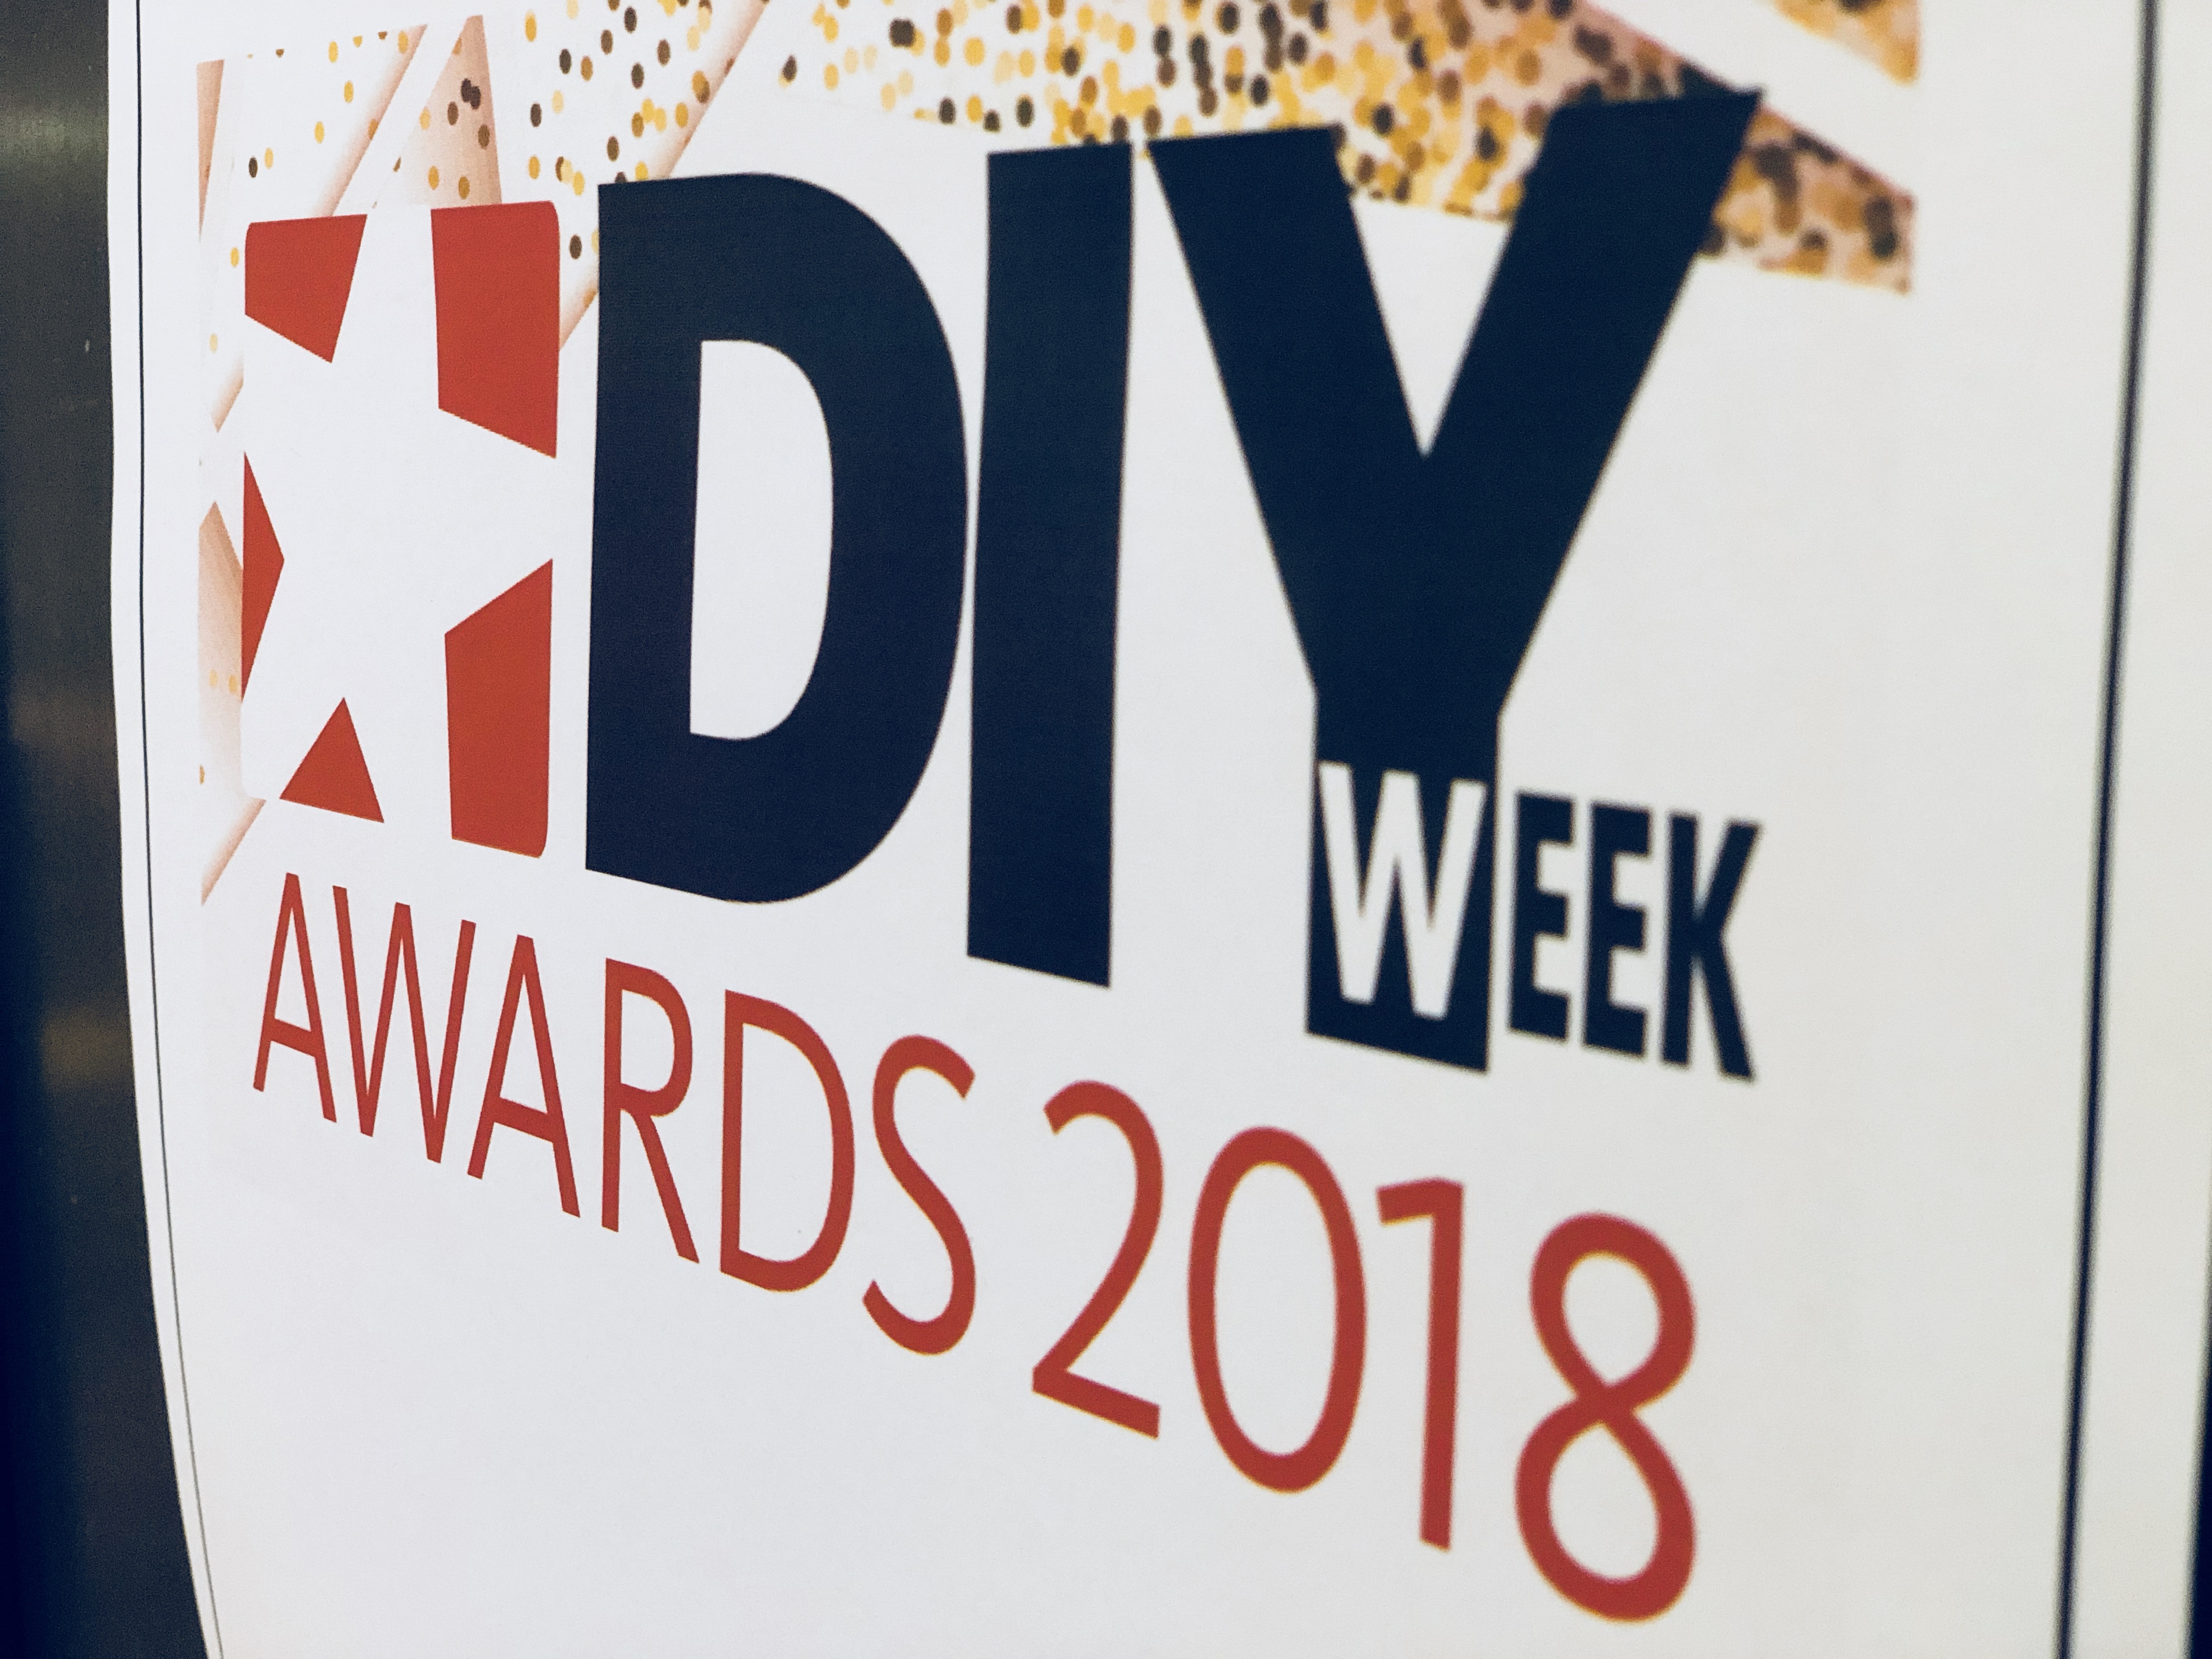 DIY Week Awards sign